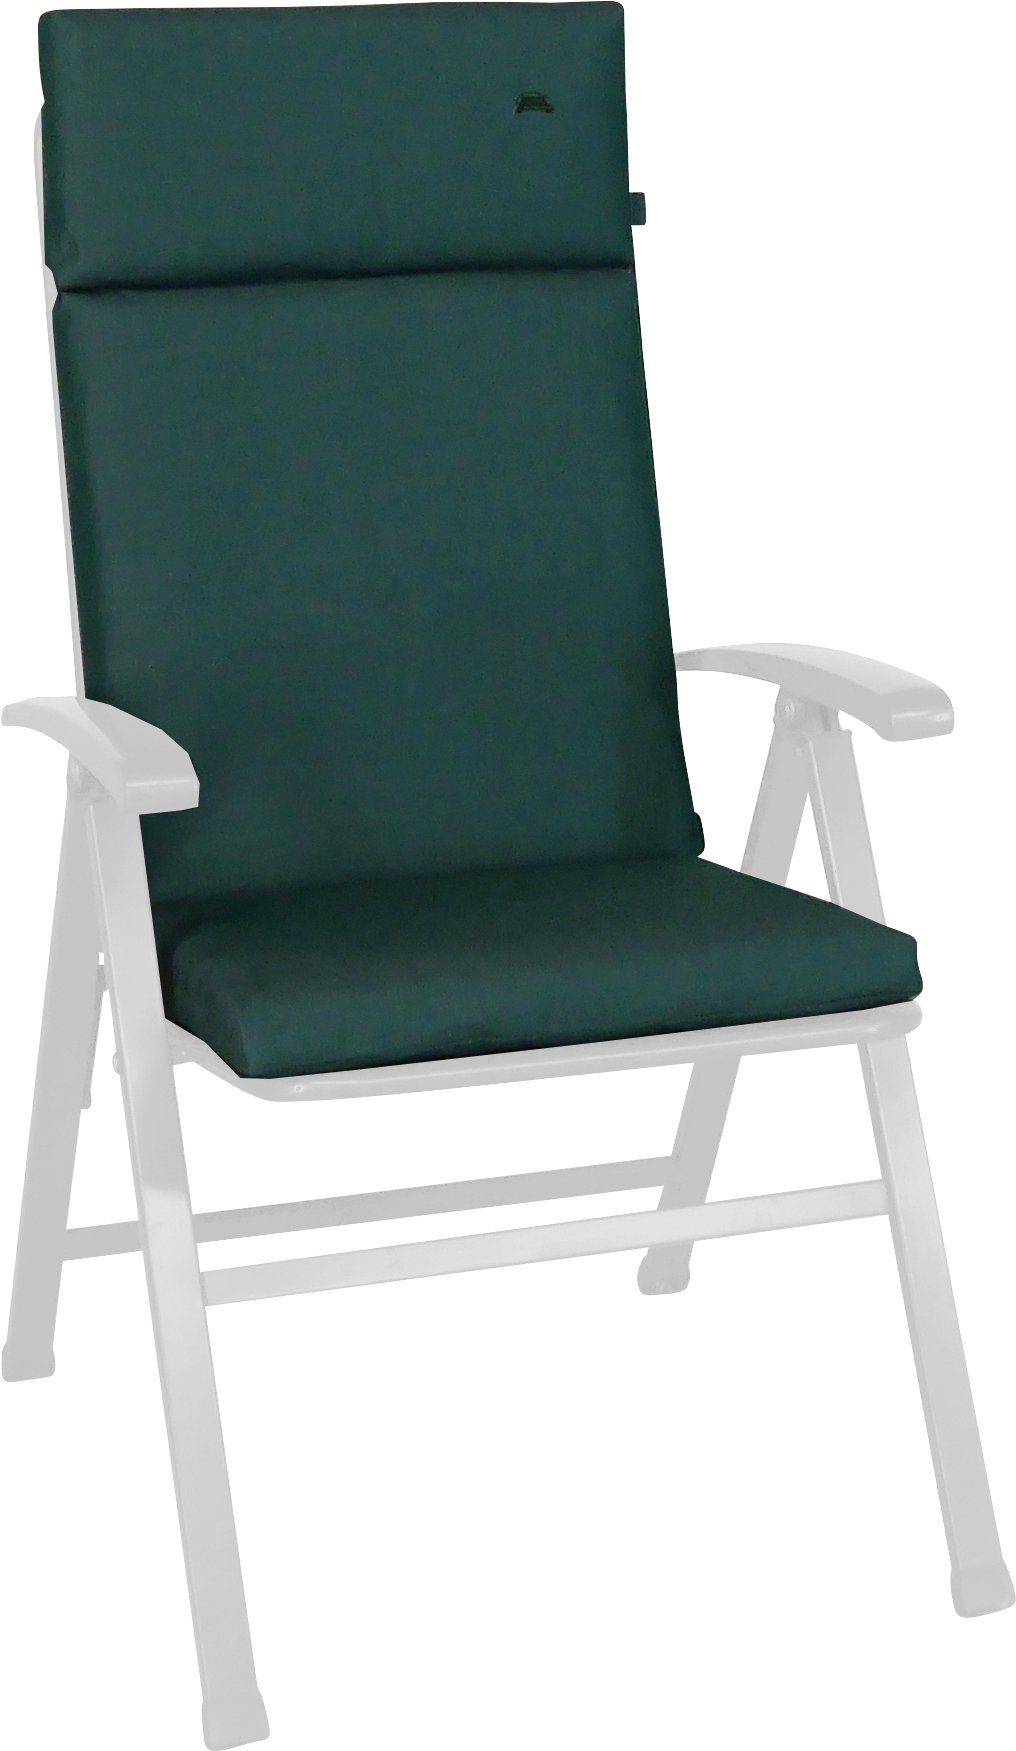 Angerer Freizeitmöbel Sesselauflage (1 grün St) Sun